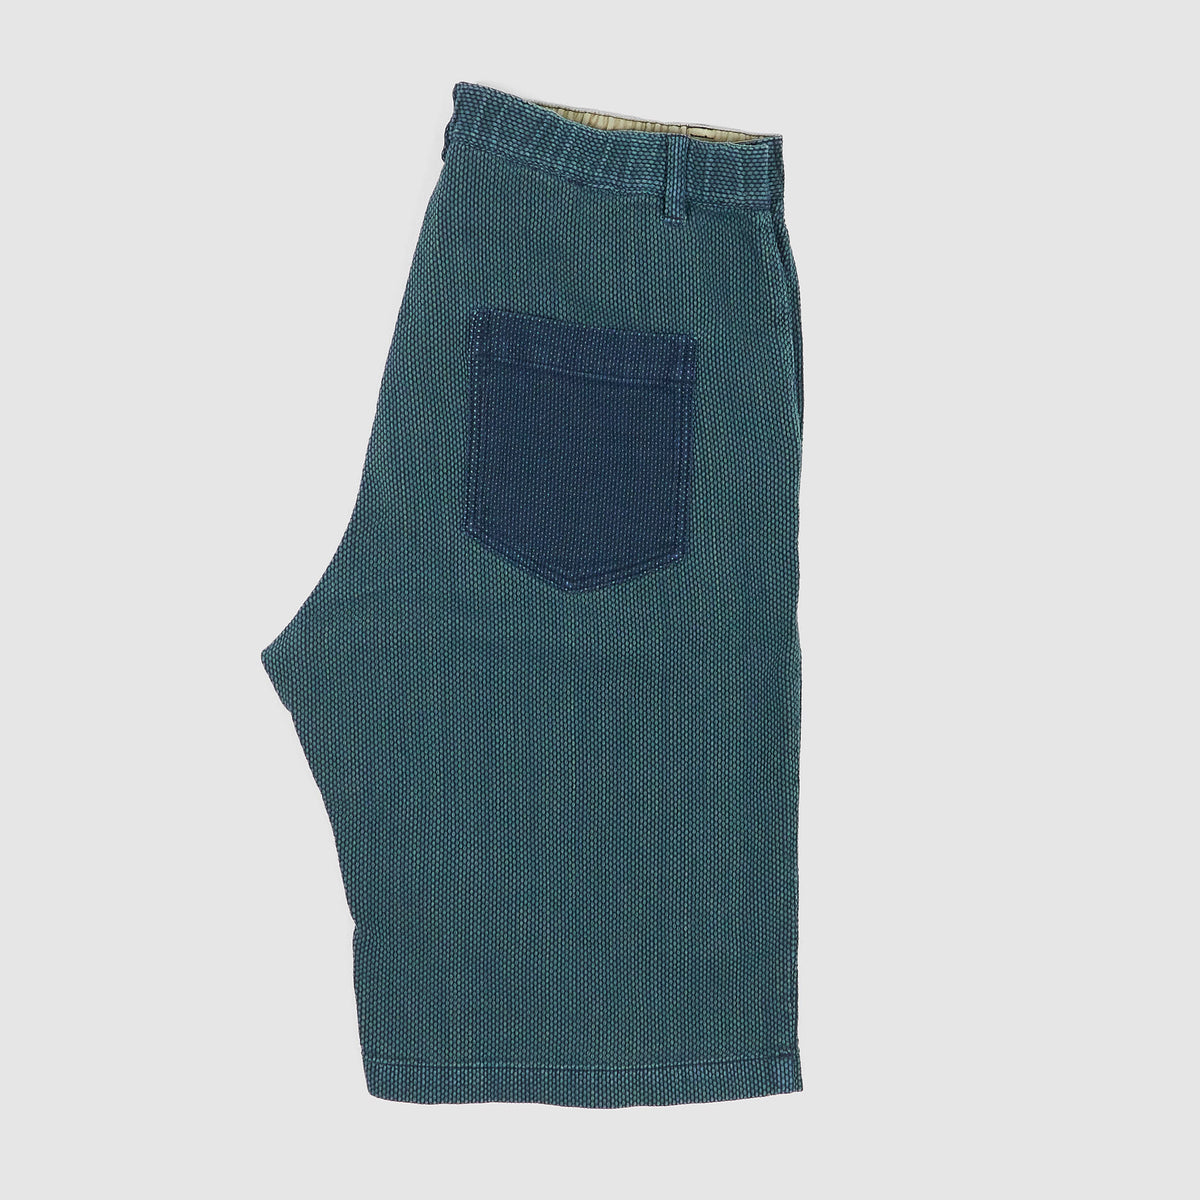 Koromo Sashiko Indigo Shorts